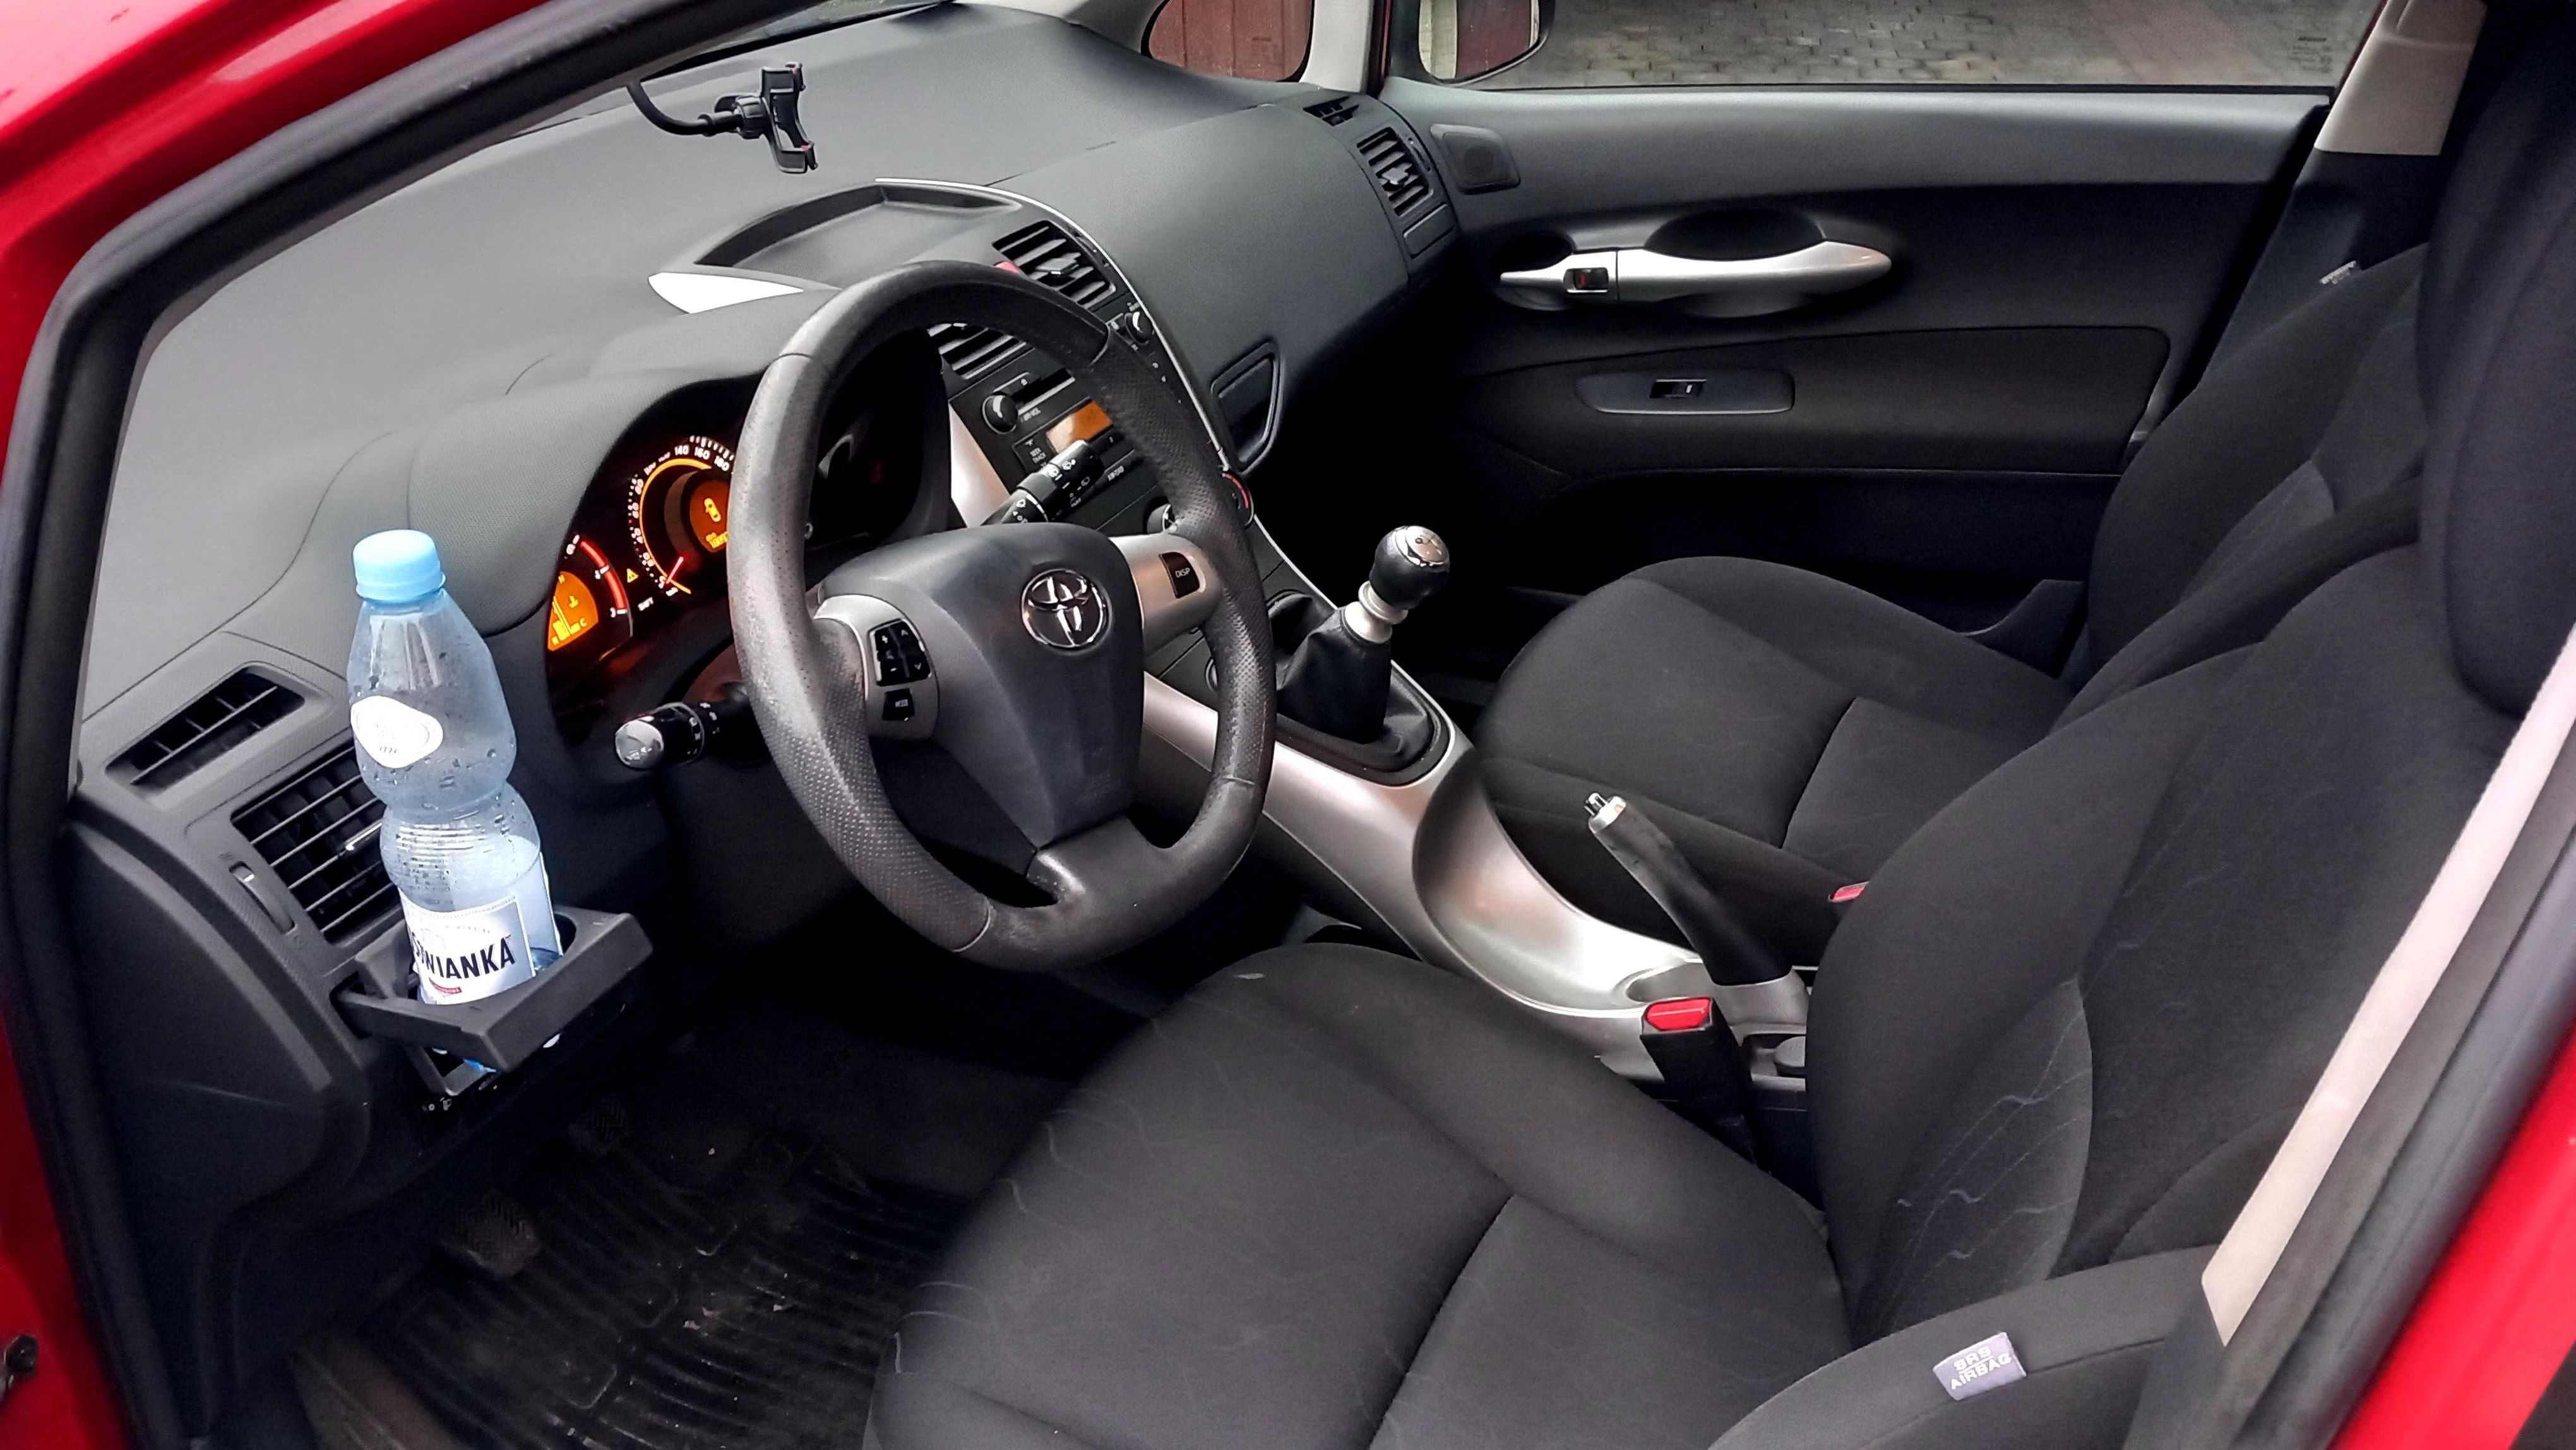 Toyota Auris 1.3  2013r  pierwszy właściciel, bezwypadkowy